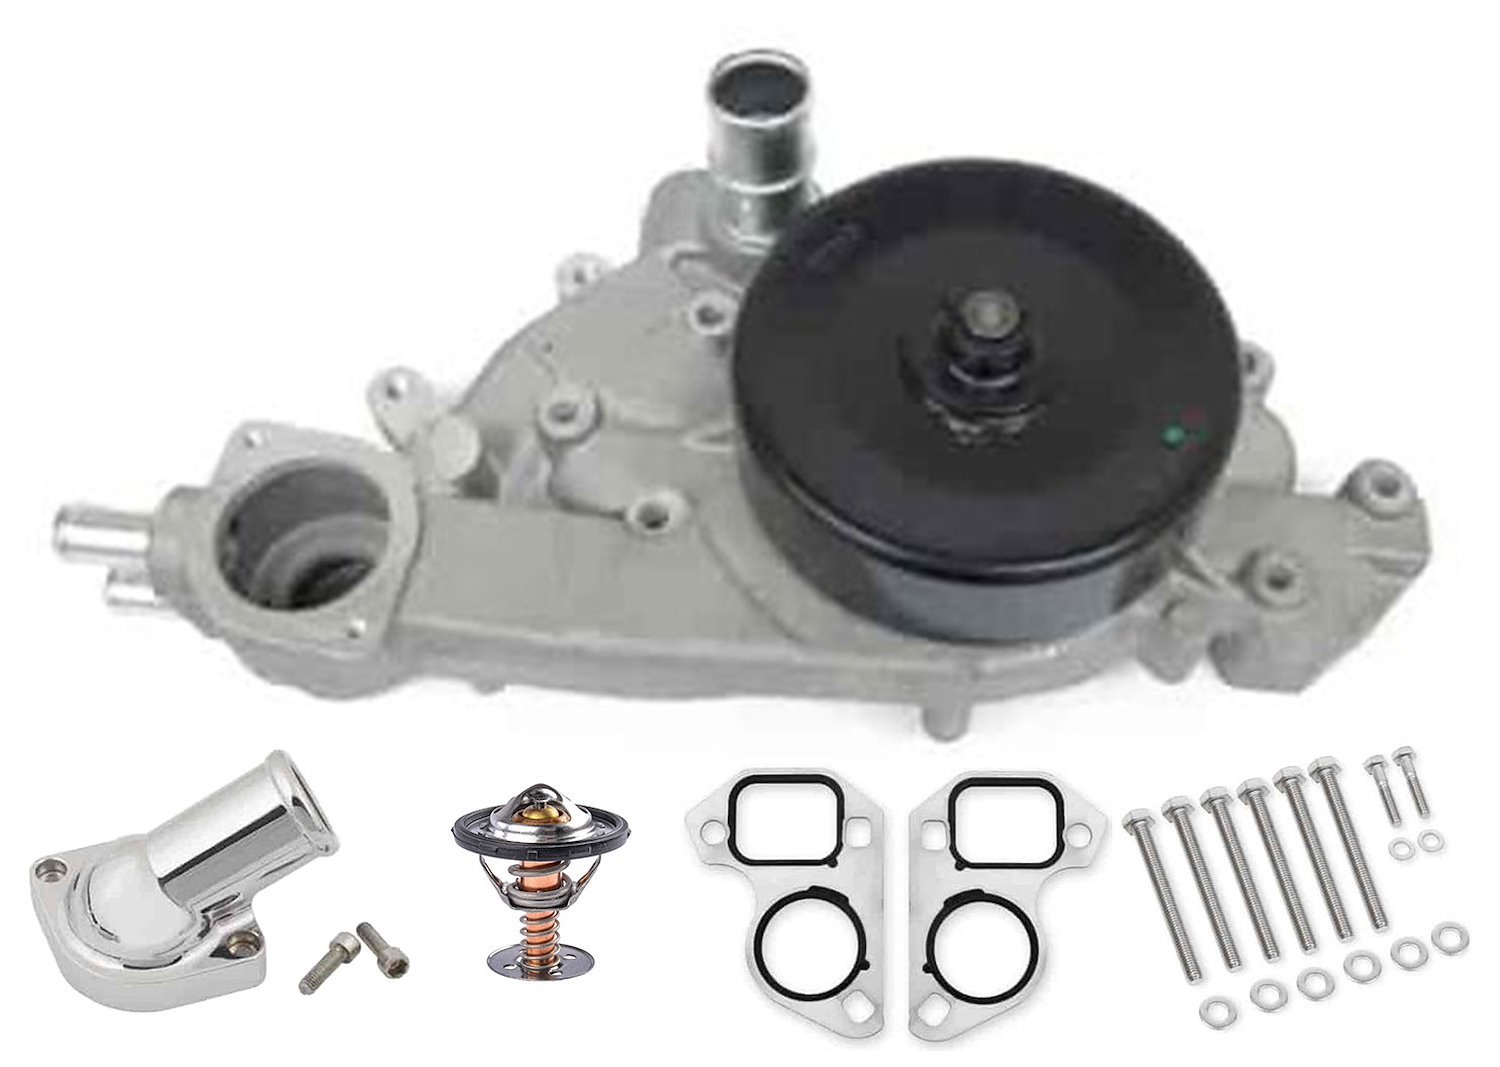 US65N US Motor Works Water Pump Kit for 2004-2009 GM Gen III LS 5.7, 6.0, 6.2, 7.0L Engines